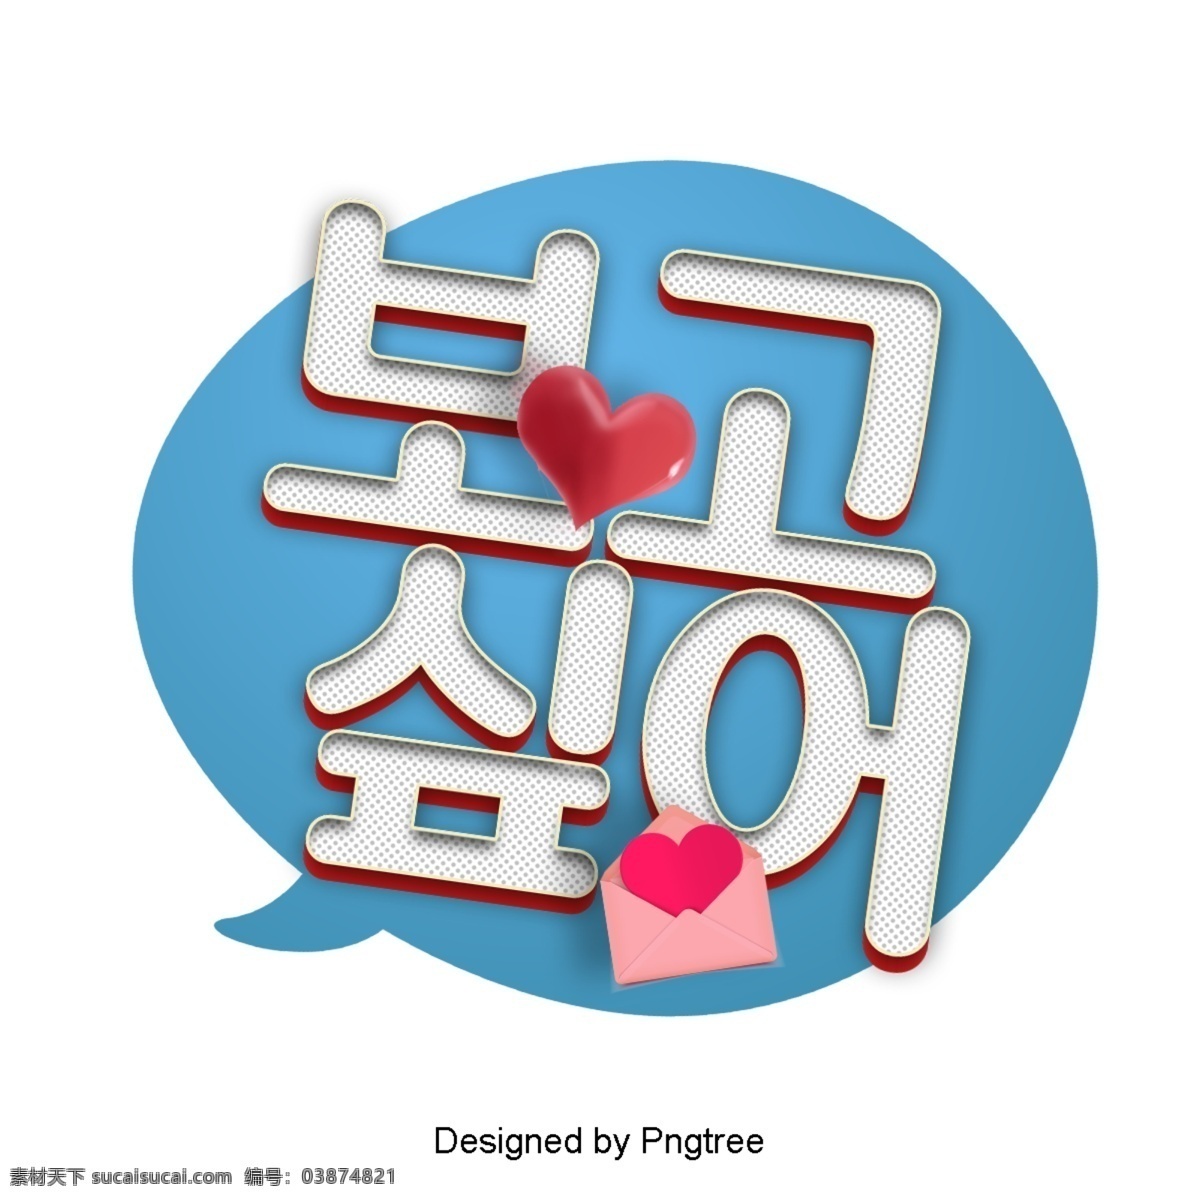 想 看看 卡通 时尚界 低语 线 对话 气泡 泡泡 帧 字体现场 韩国 动画片 现代 可爱 浪漫 爱 我想看看 心脏形